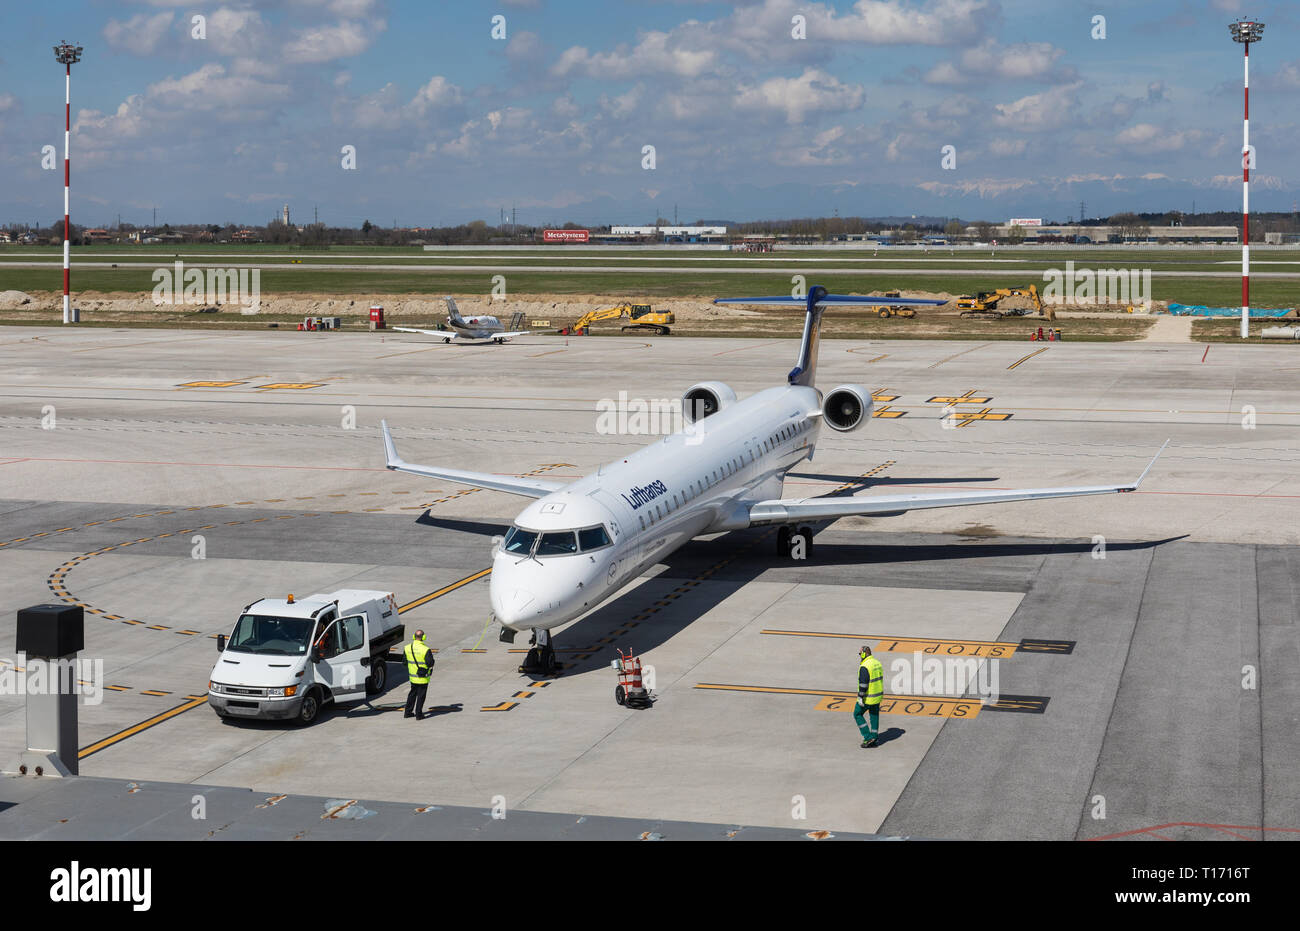 Lufthansa aircraft at Stock Photo